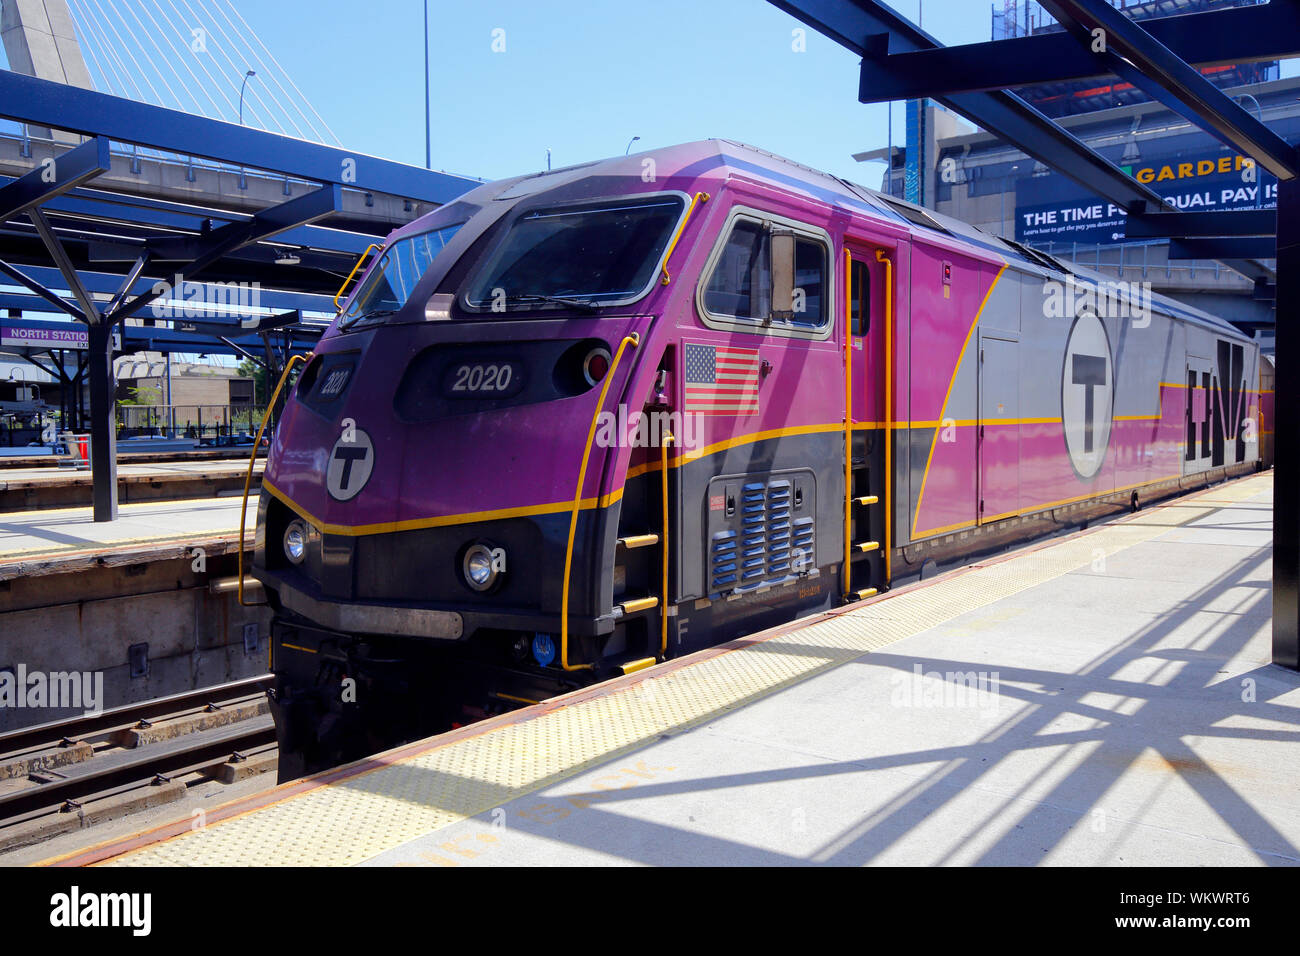 Un train de banlieue 2020 de la Massachusetts Bay Transportation Authority (MBTA) à la gare nord de Boston, ma Banque D'Images